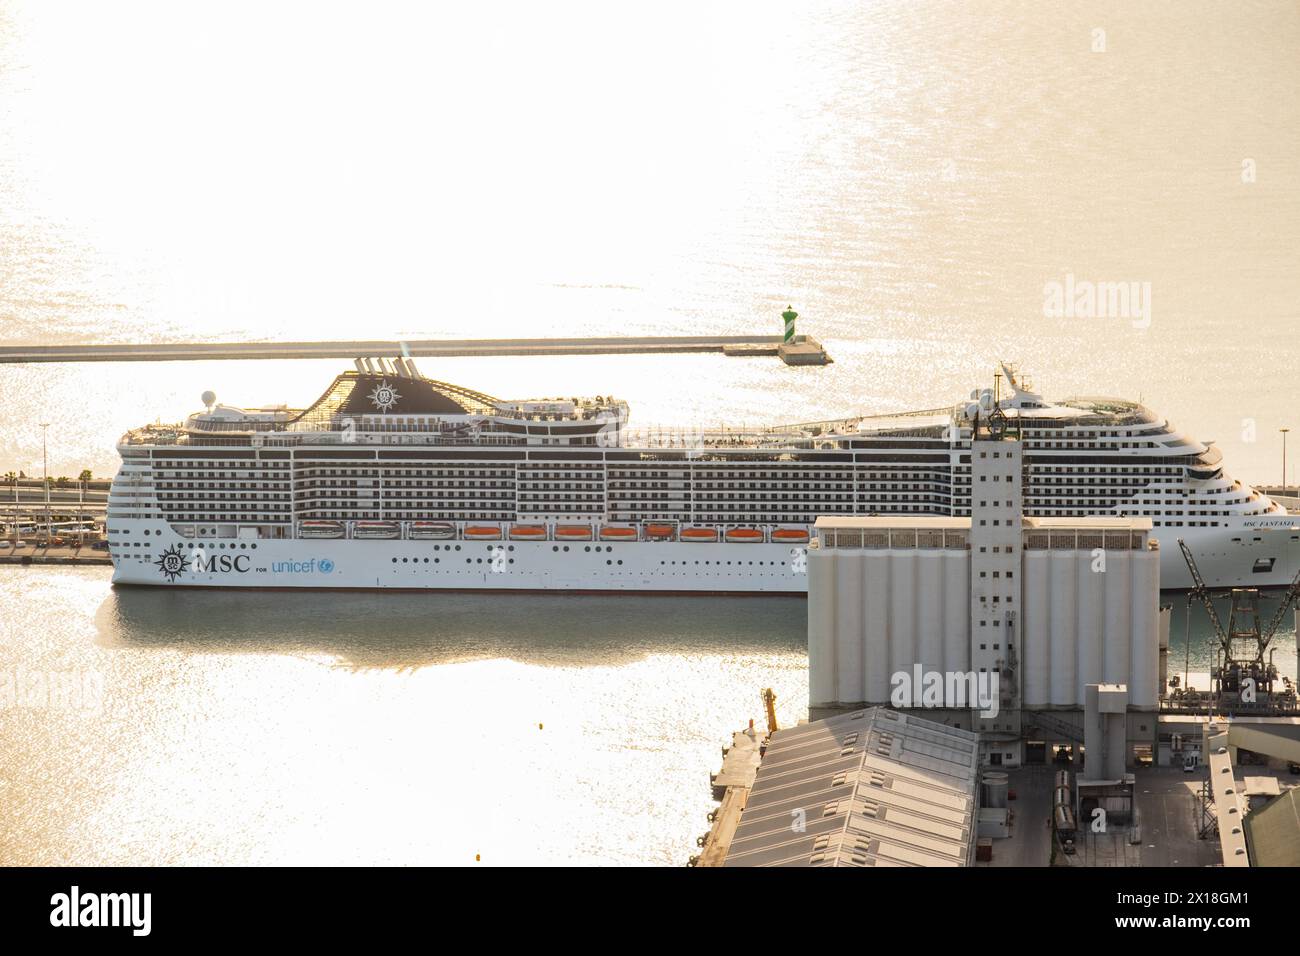 Un navire de croisière MSC dans le port de Barccelona, Espagne Banque D'Images